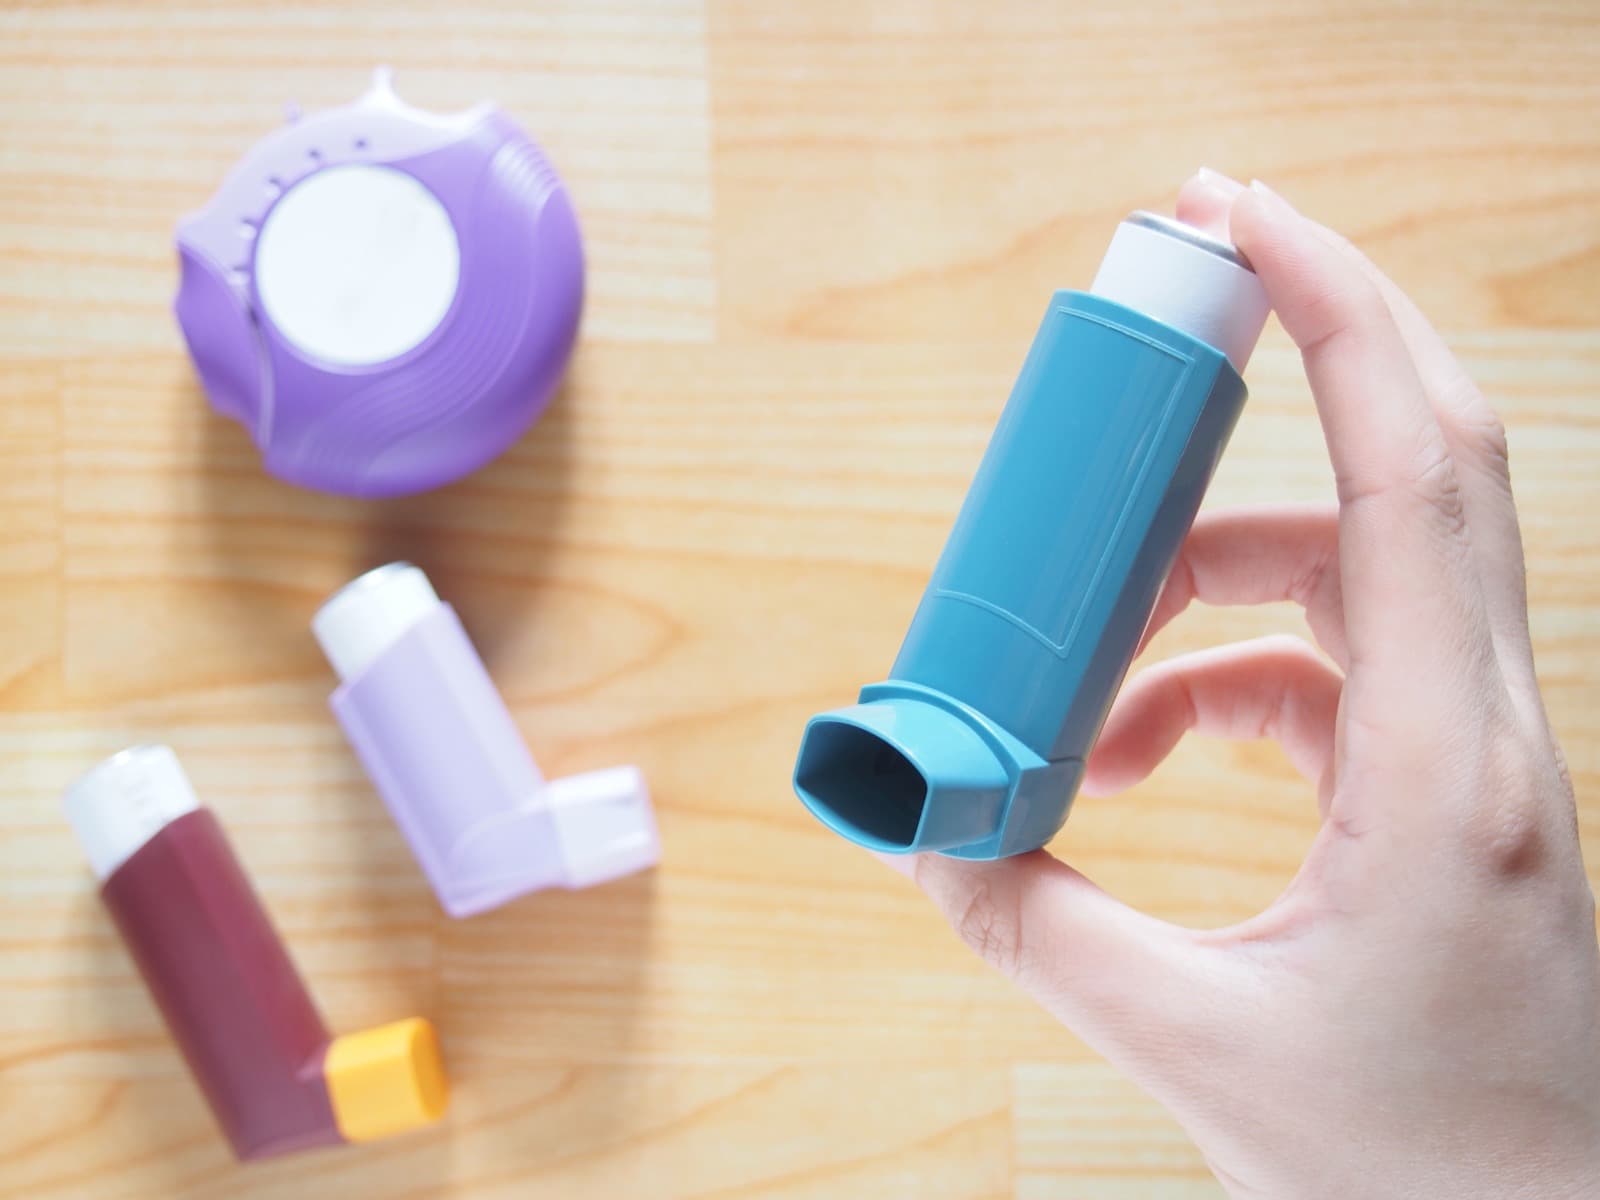 Hidden advantages of long-term controller inhalers